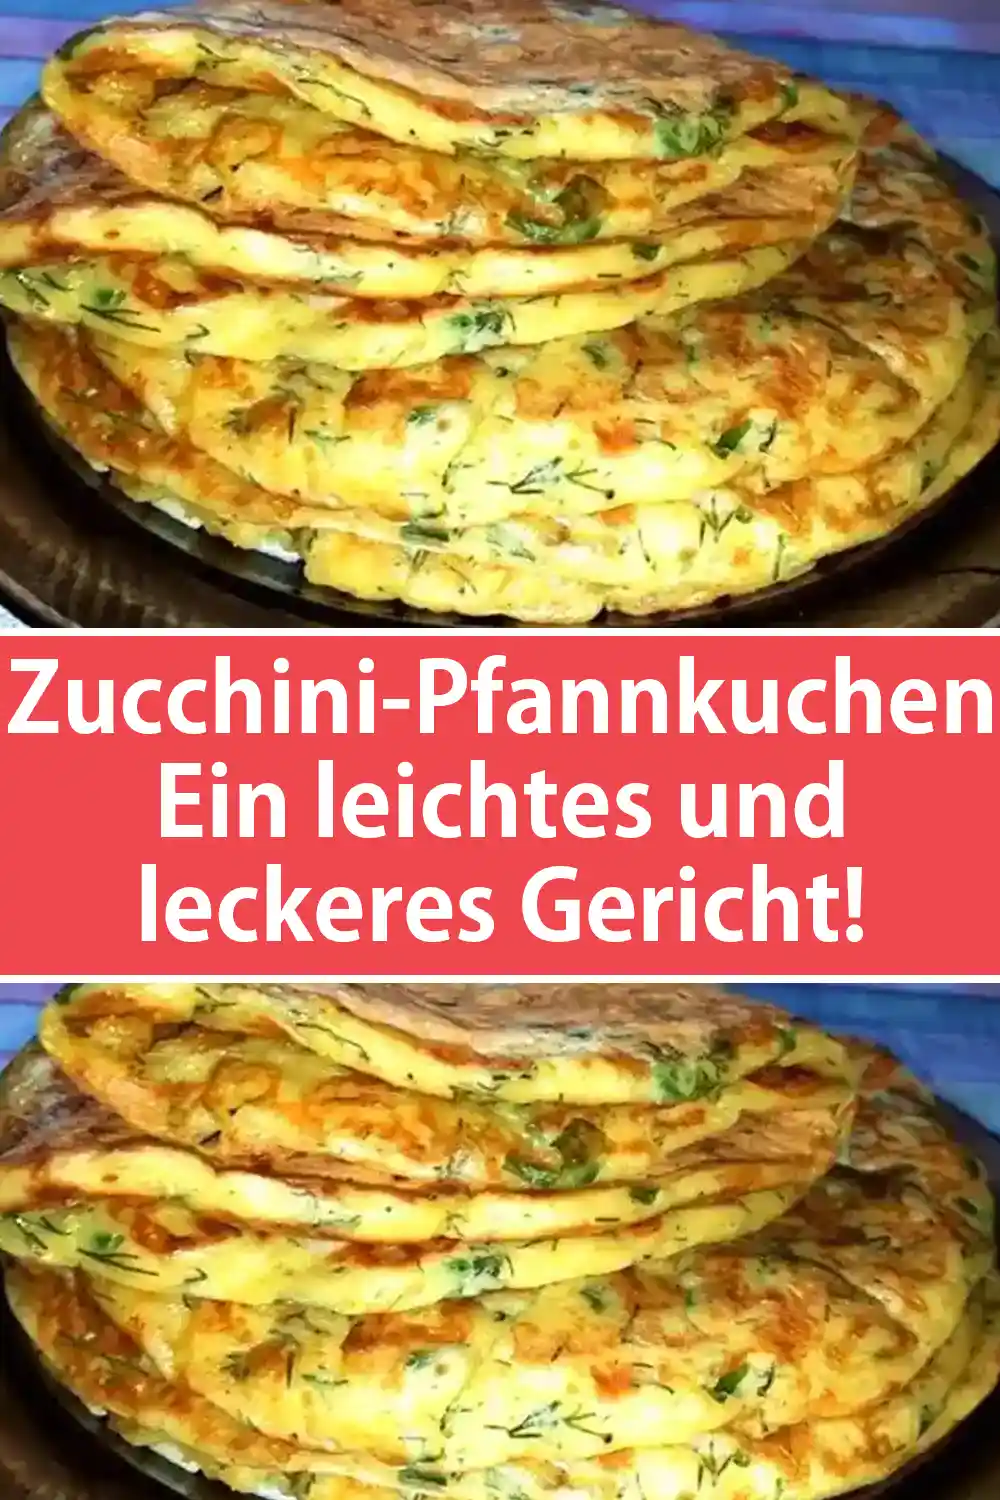 Zucchini-Pfannkuchen - Ein leichtes und leckeres Gericht!